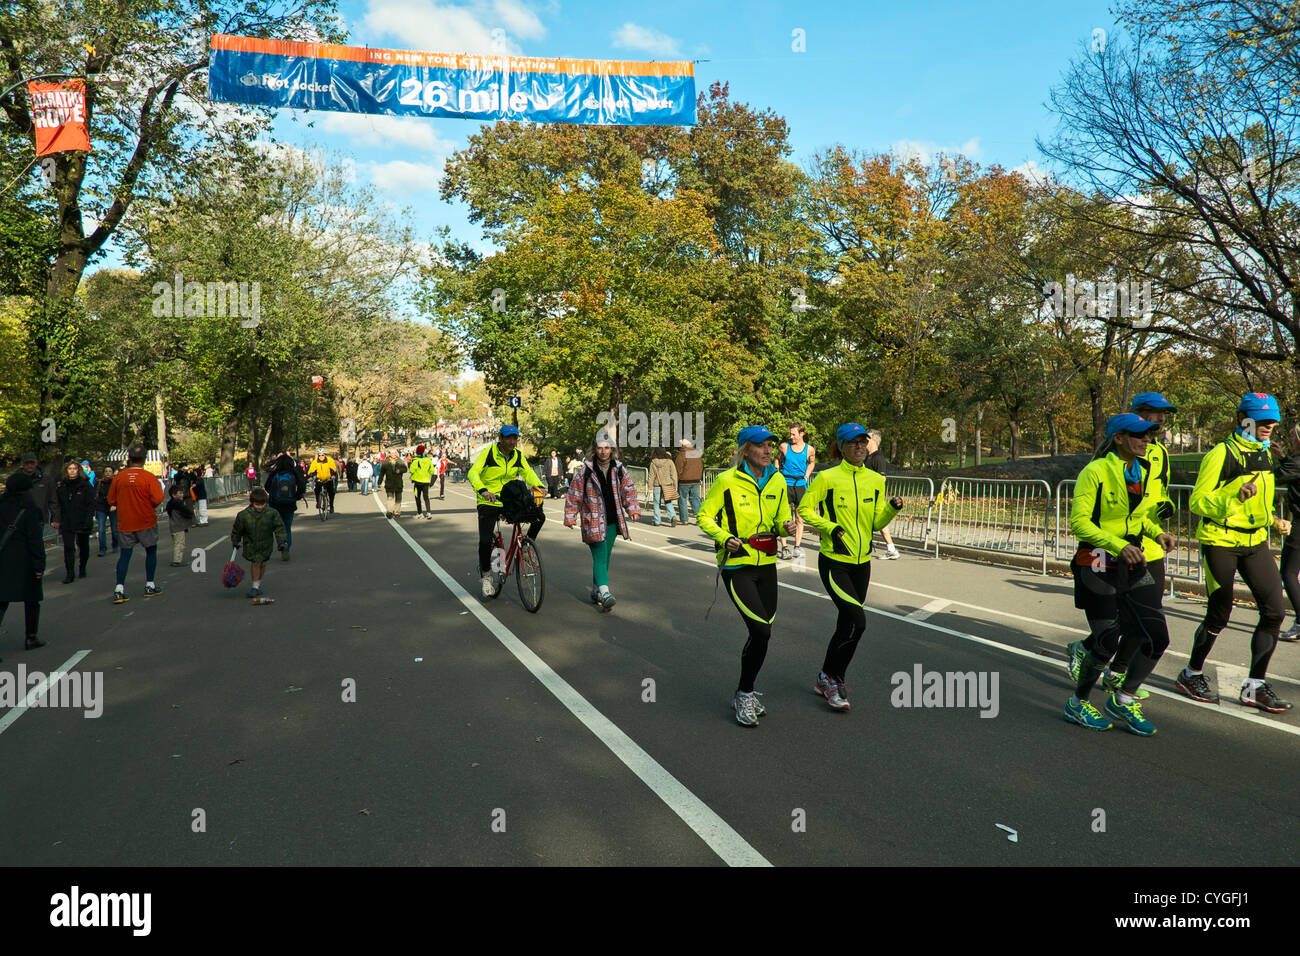 El 4 de noviembre de 2012, Nueva York, NY, EEUU. Los corredores cruzan la marca de 26 millas de la ruta de la Maratón de Nueva York, que fue cancelado debido al huracán de arena. Muchos competidores corrió el Parque Central parte de la ruta, a pesar de la cancelación. Foto de stock